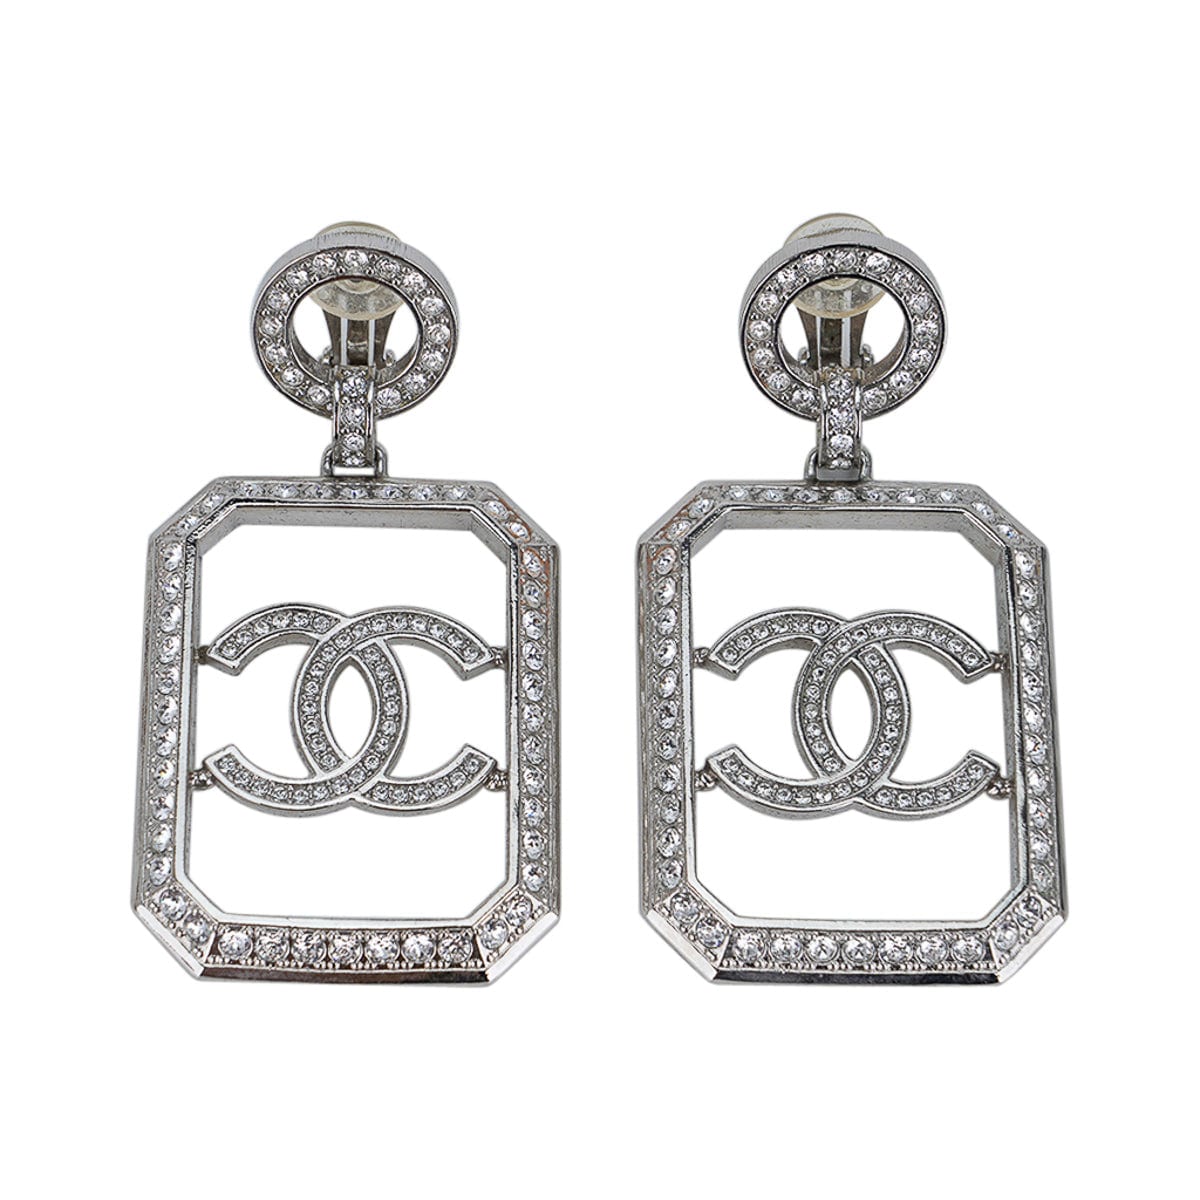 Vintage Chanel Earrings Hoops Worn 3 Ways – Mightychic